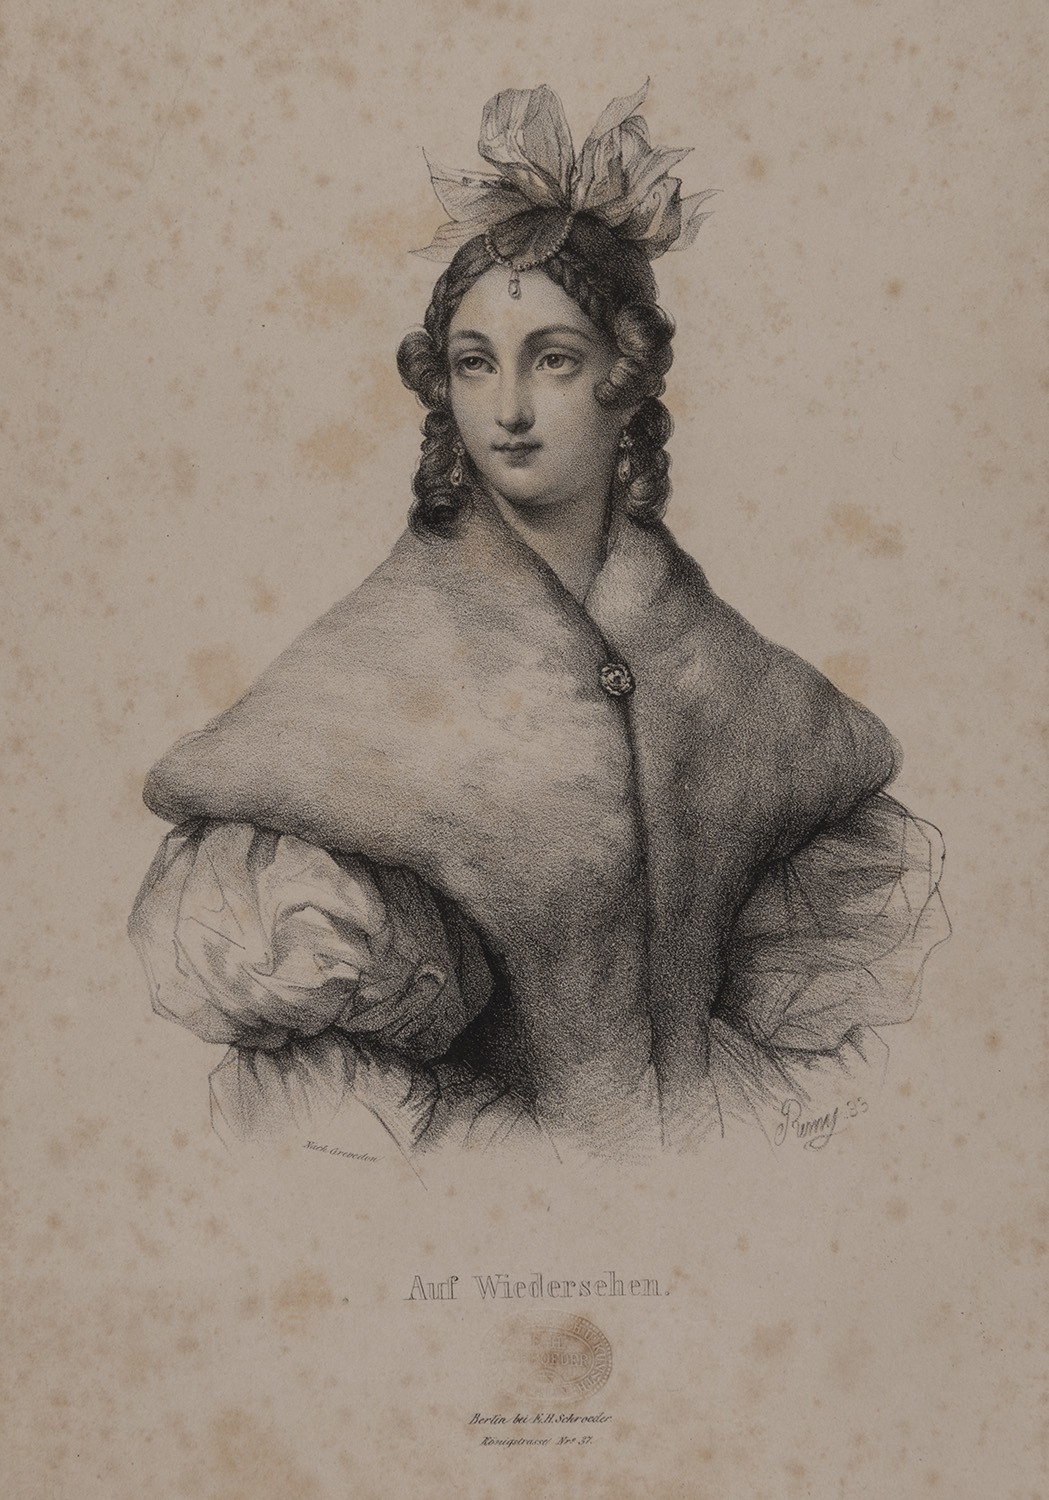 Hüftbild einer Dame als Abschiedsblatt (Landesgeschichtliche Vereinigung für die Mark Brandenburg e.V., Archiv CC BY)